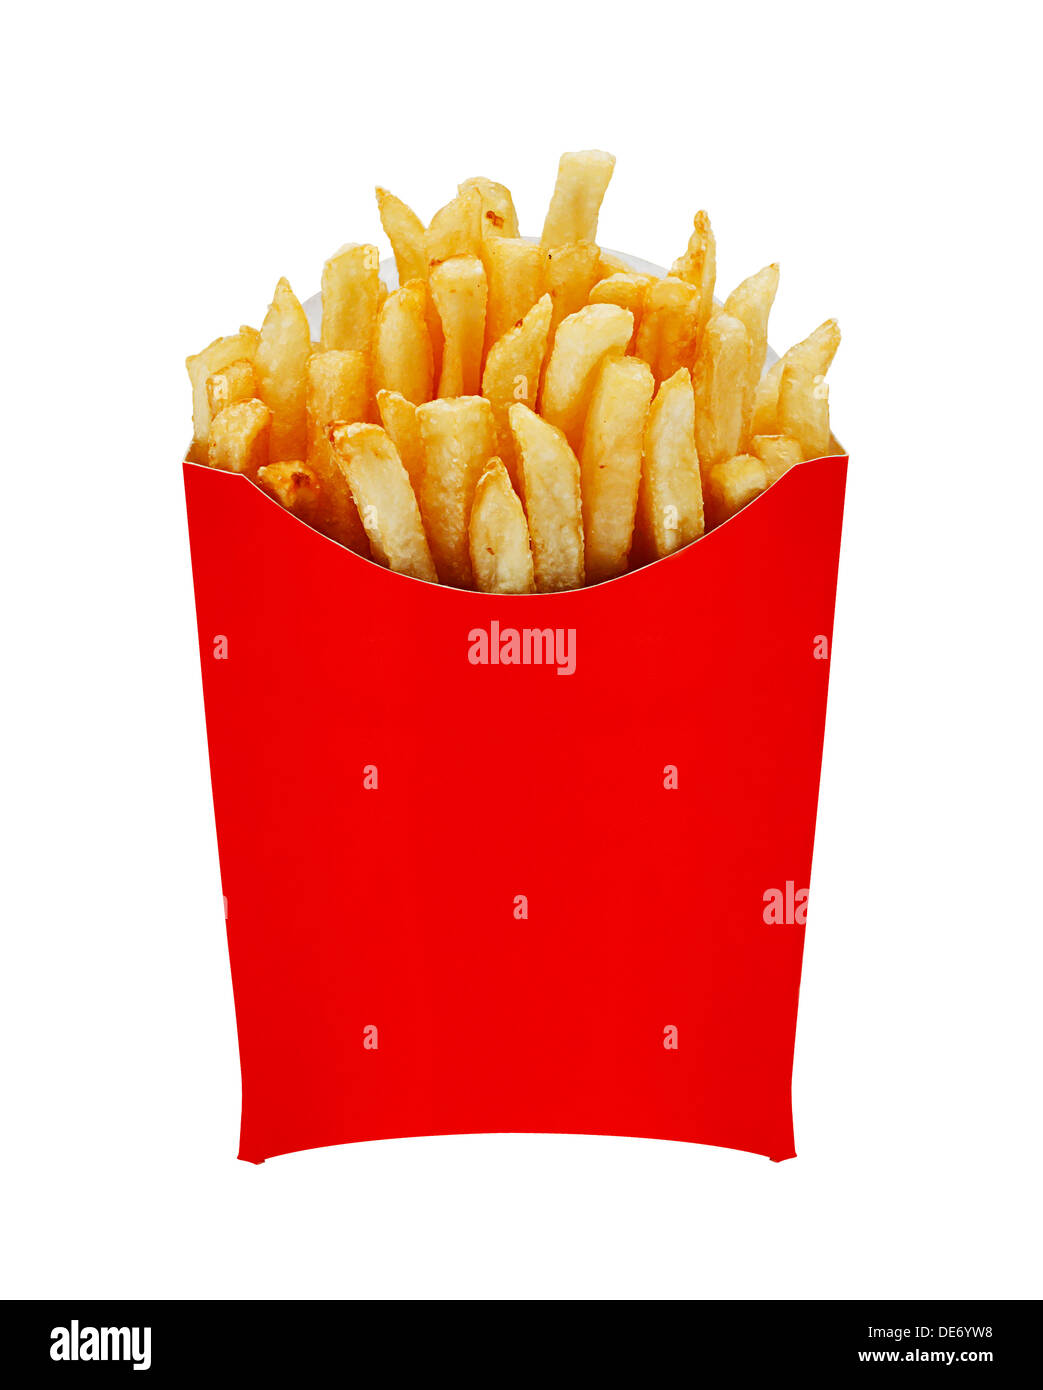 Patatas fritas o chips originalmente llamado las patatas fritas y, más recientemente, llamado Freedom fries en América en una red que sirve el cartón Foto de stock